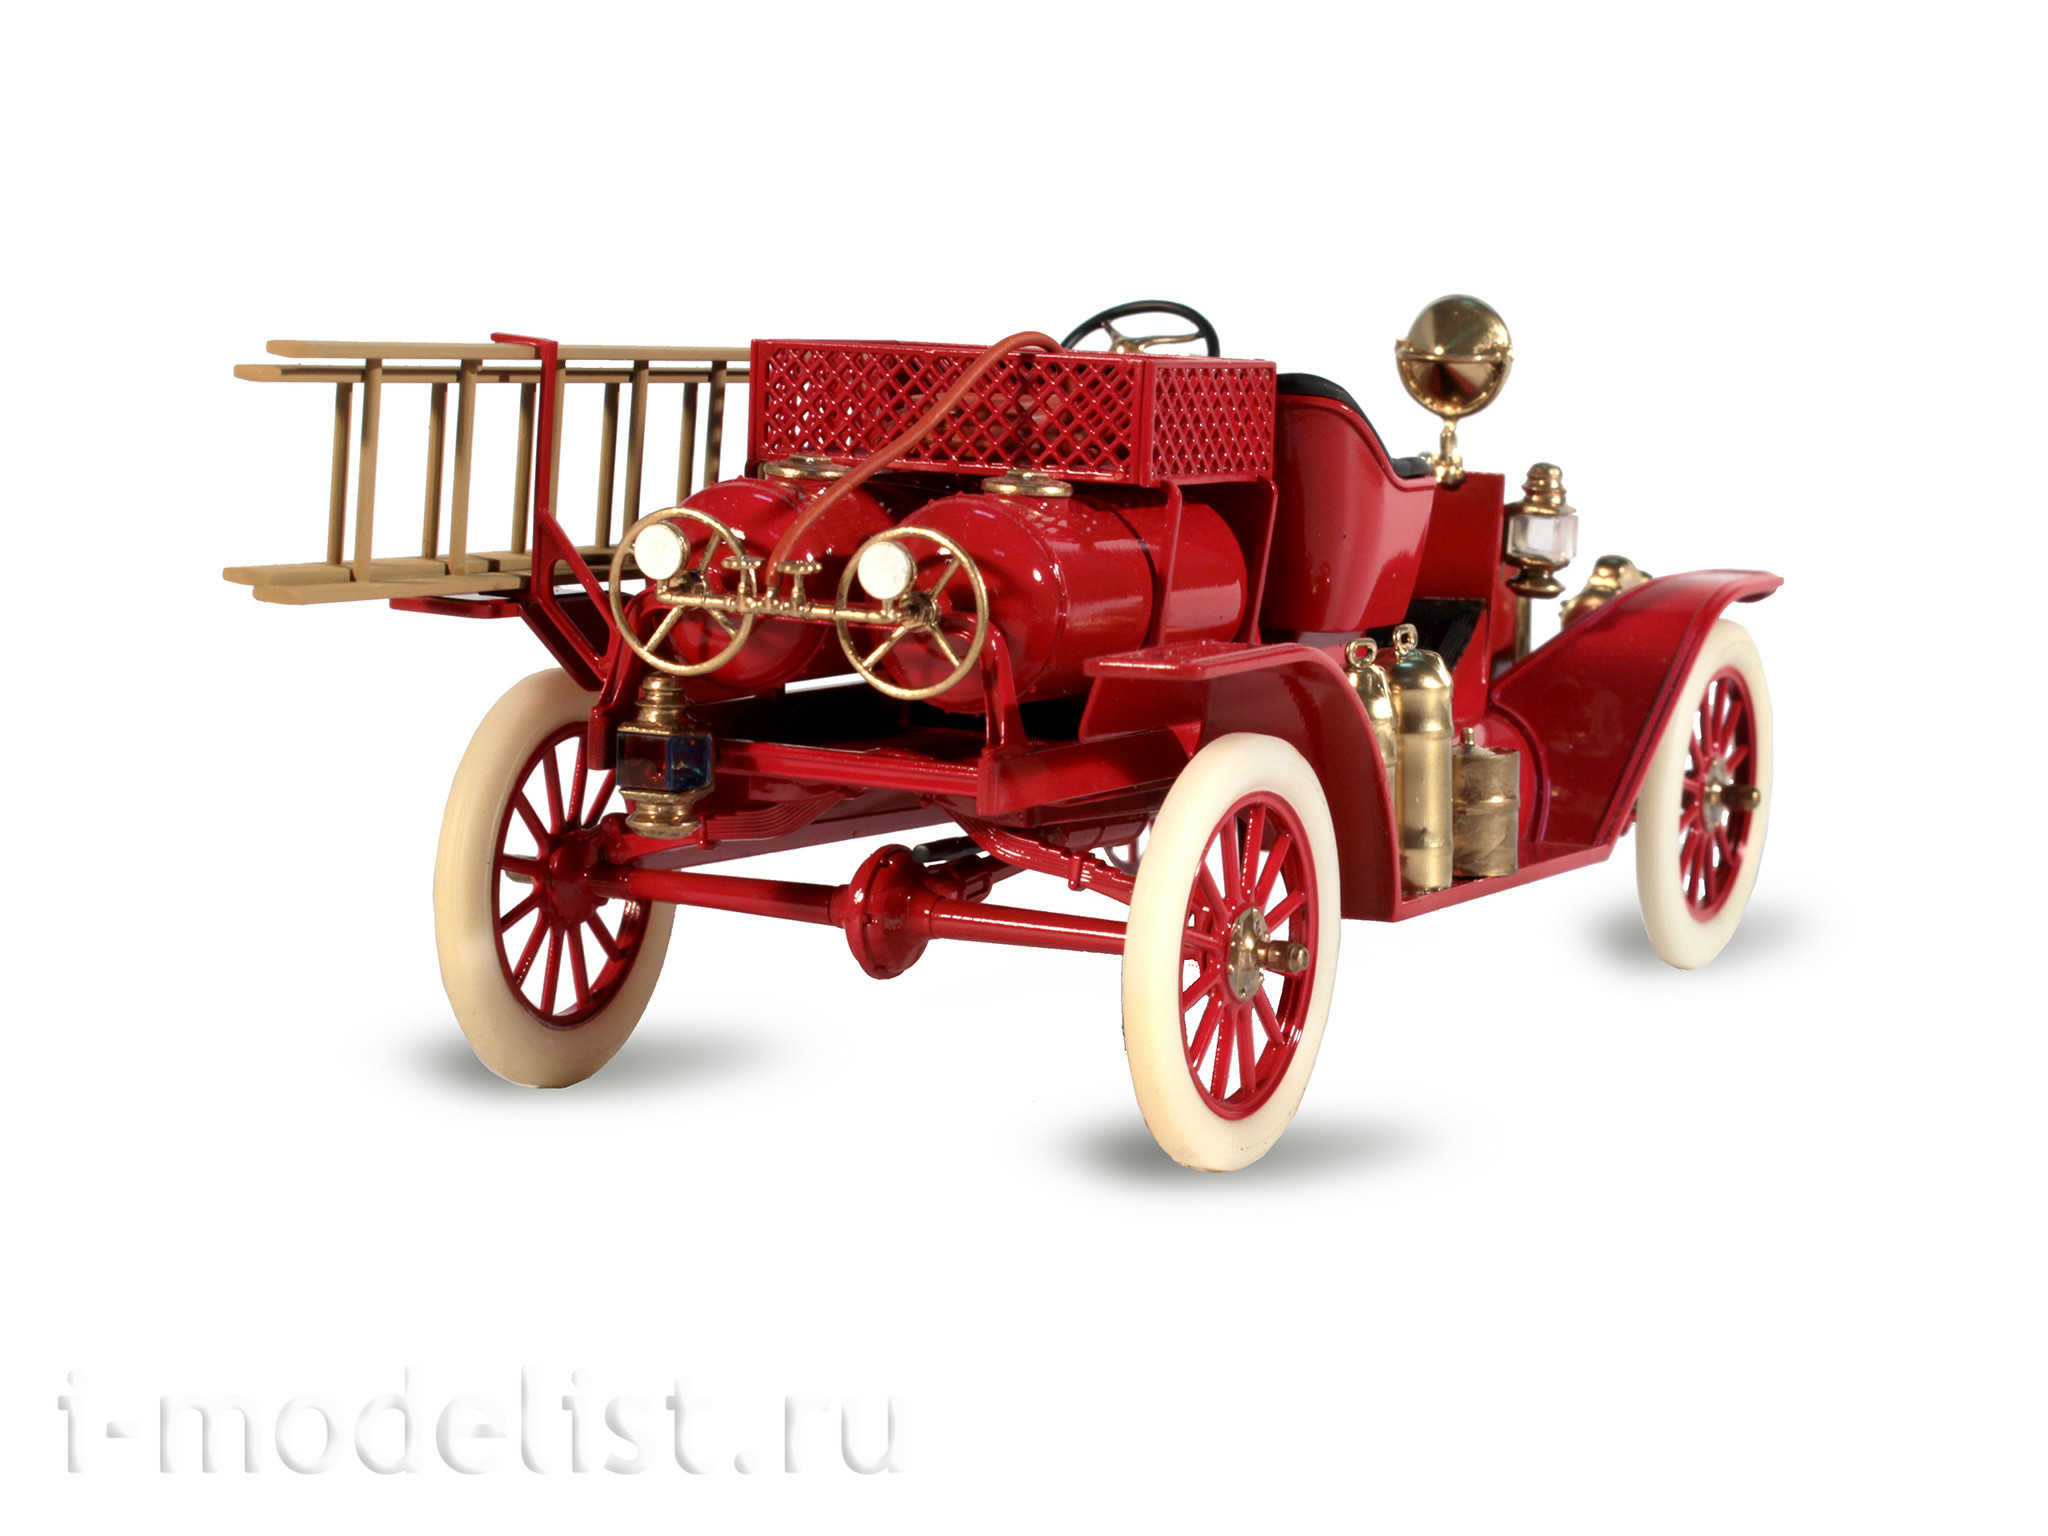 24017 ICM 1/24 Пожарный автомобиль Модель Т 1914 г. с экипажем